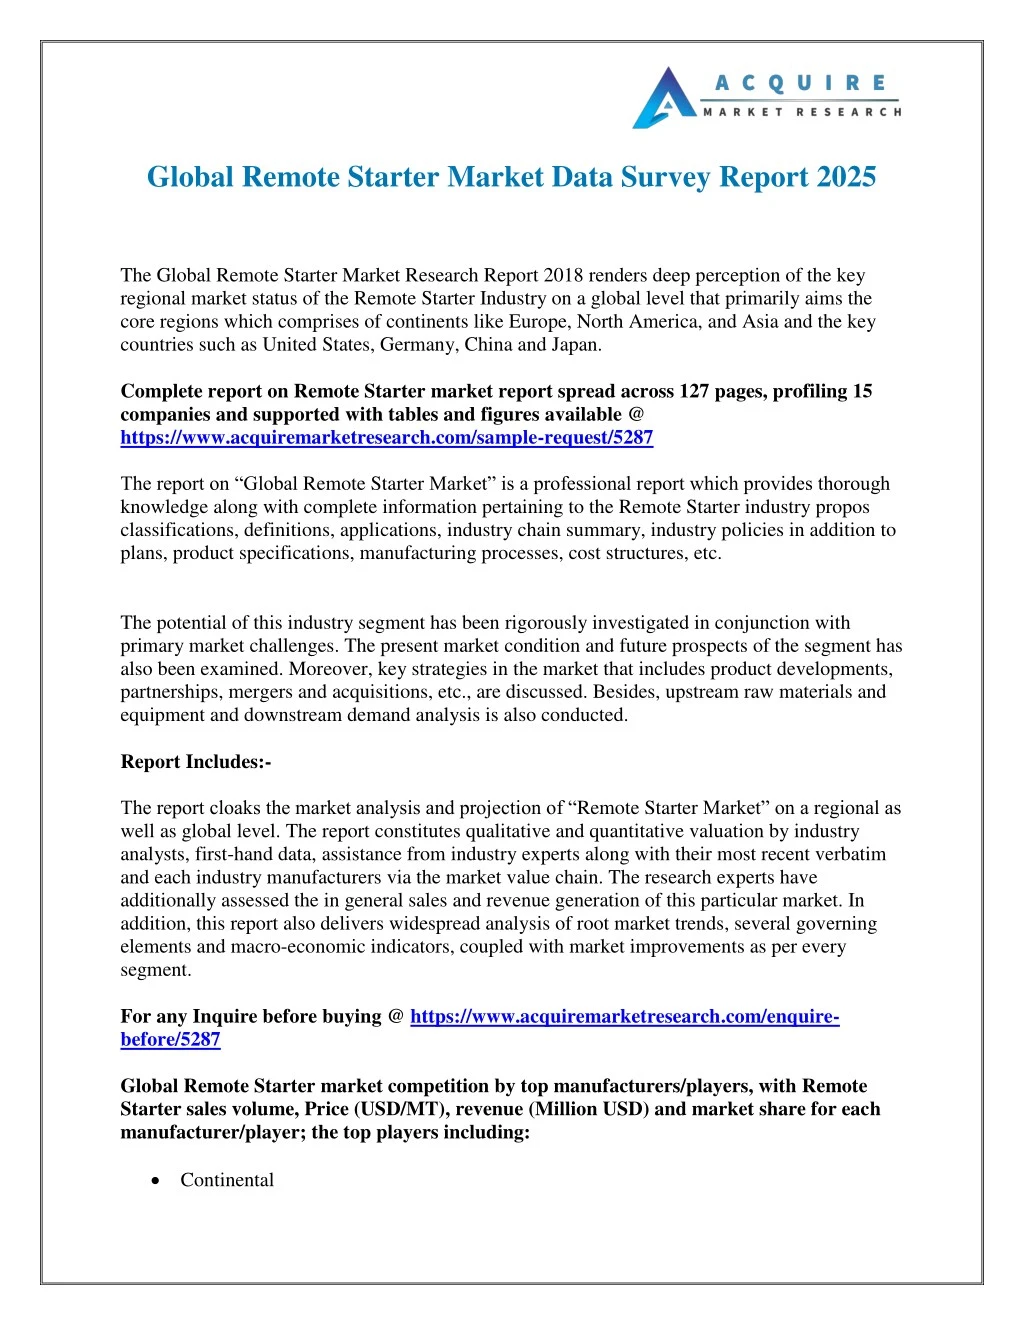 global remote starter market data survey report